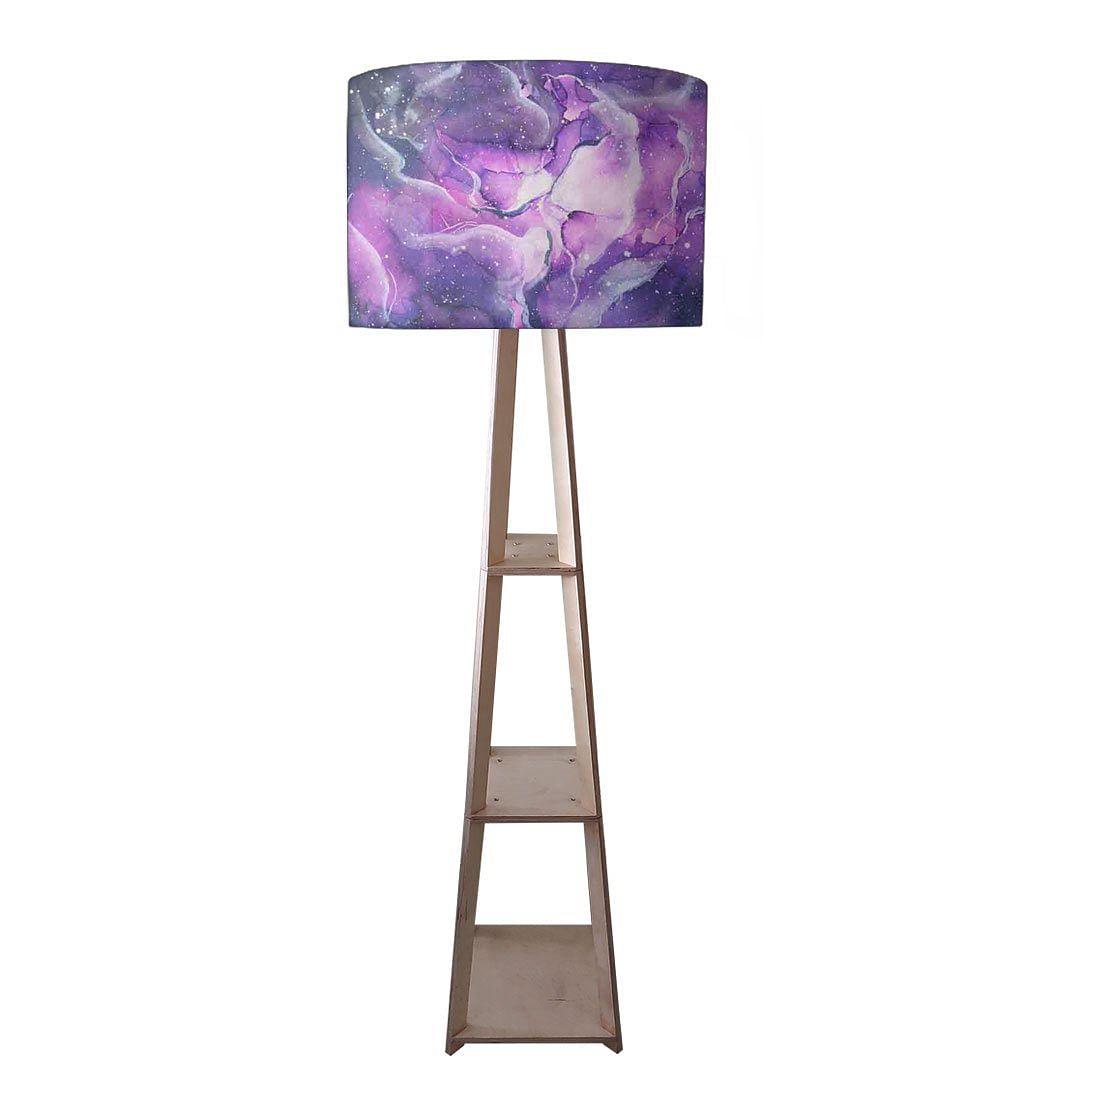 Colorful Corner Lamp for Bedside Light - Space Nutcase